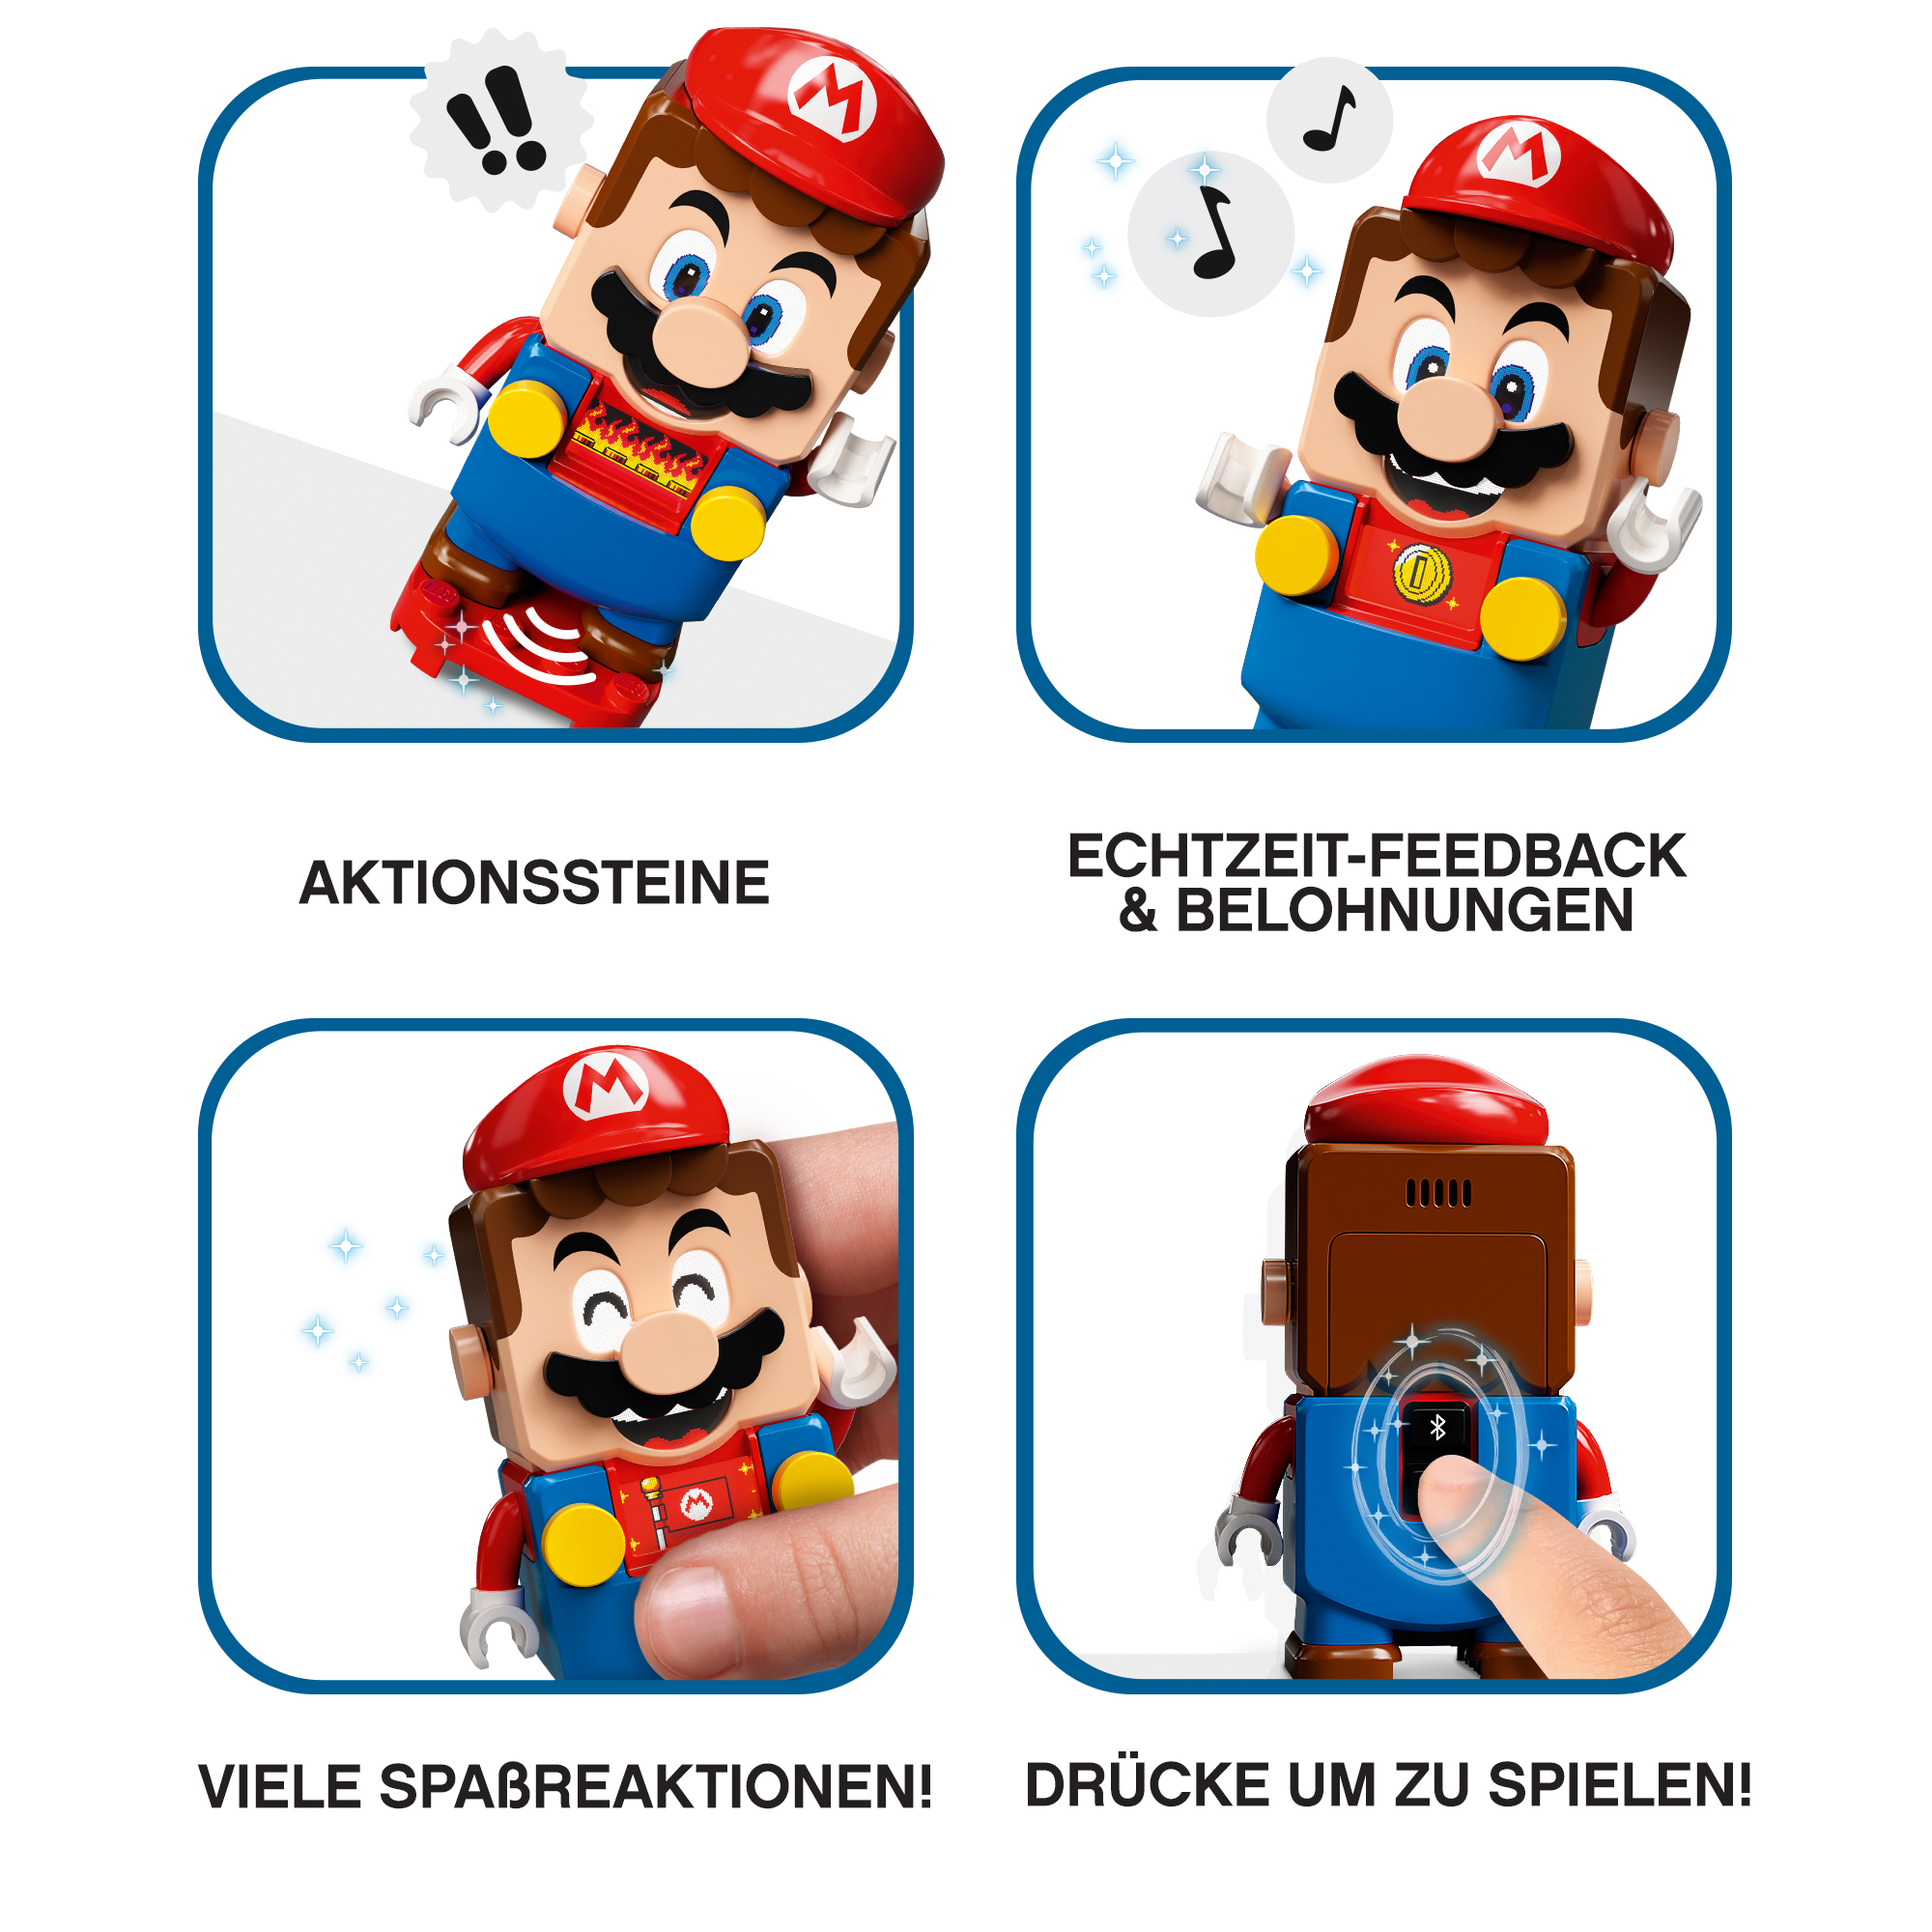 Mehrfarbig mit Starterset Mario™ Abenteuer 71360 LEGO Bausatz, –